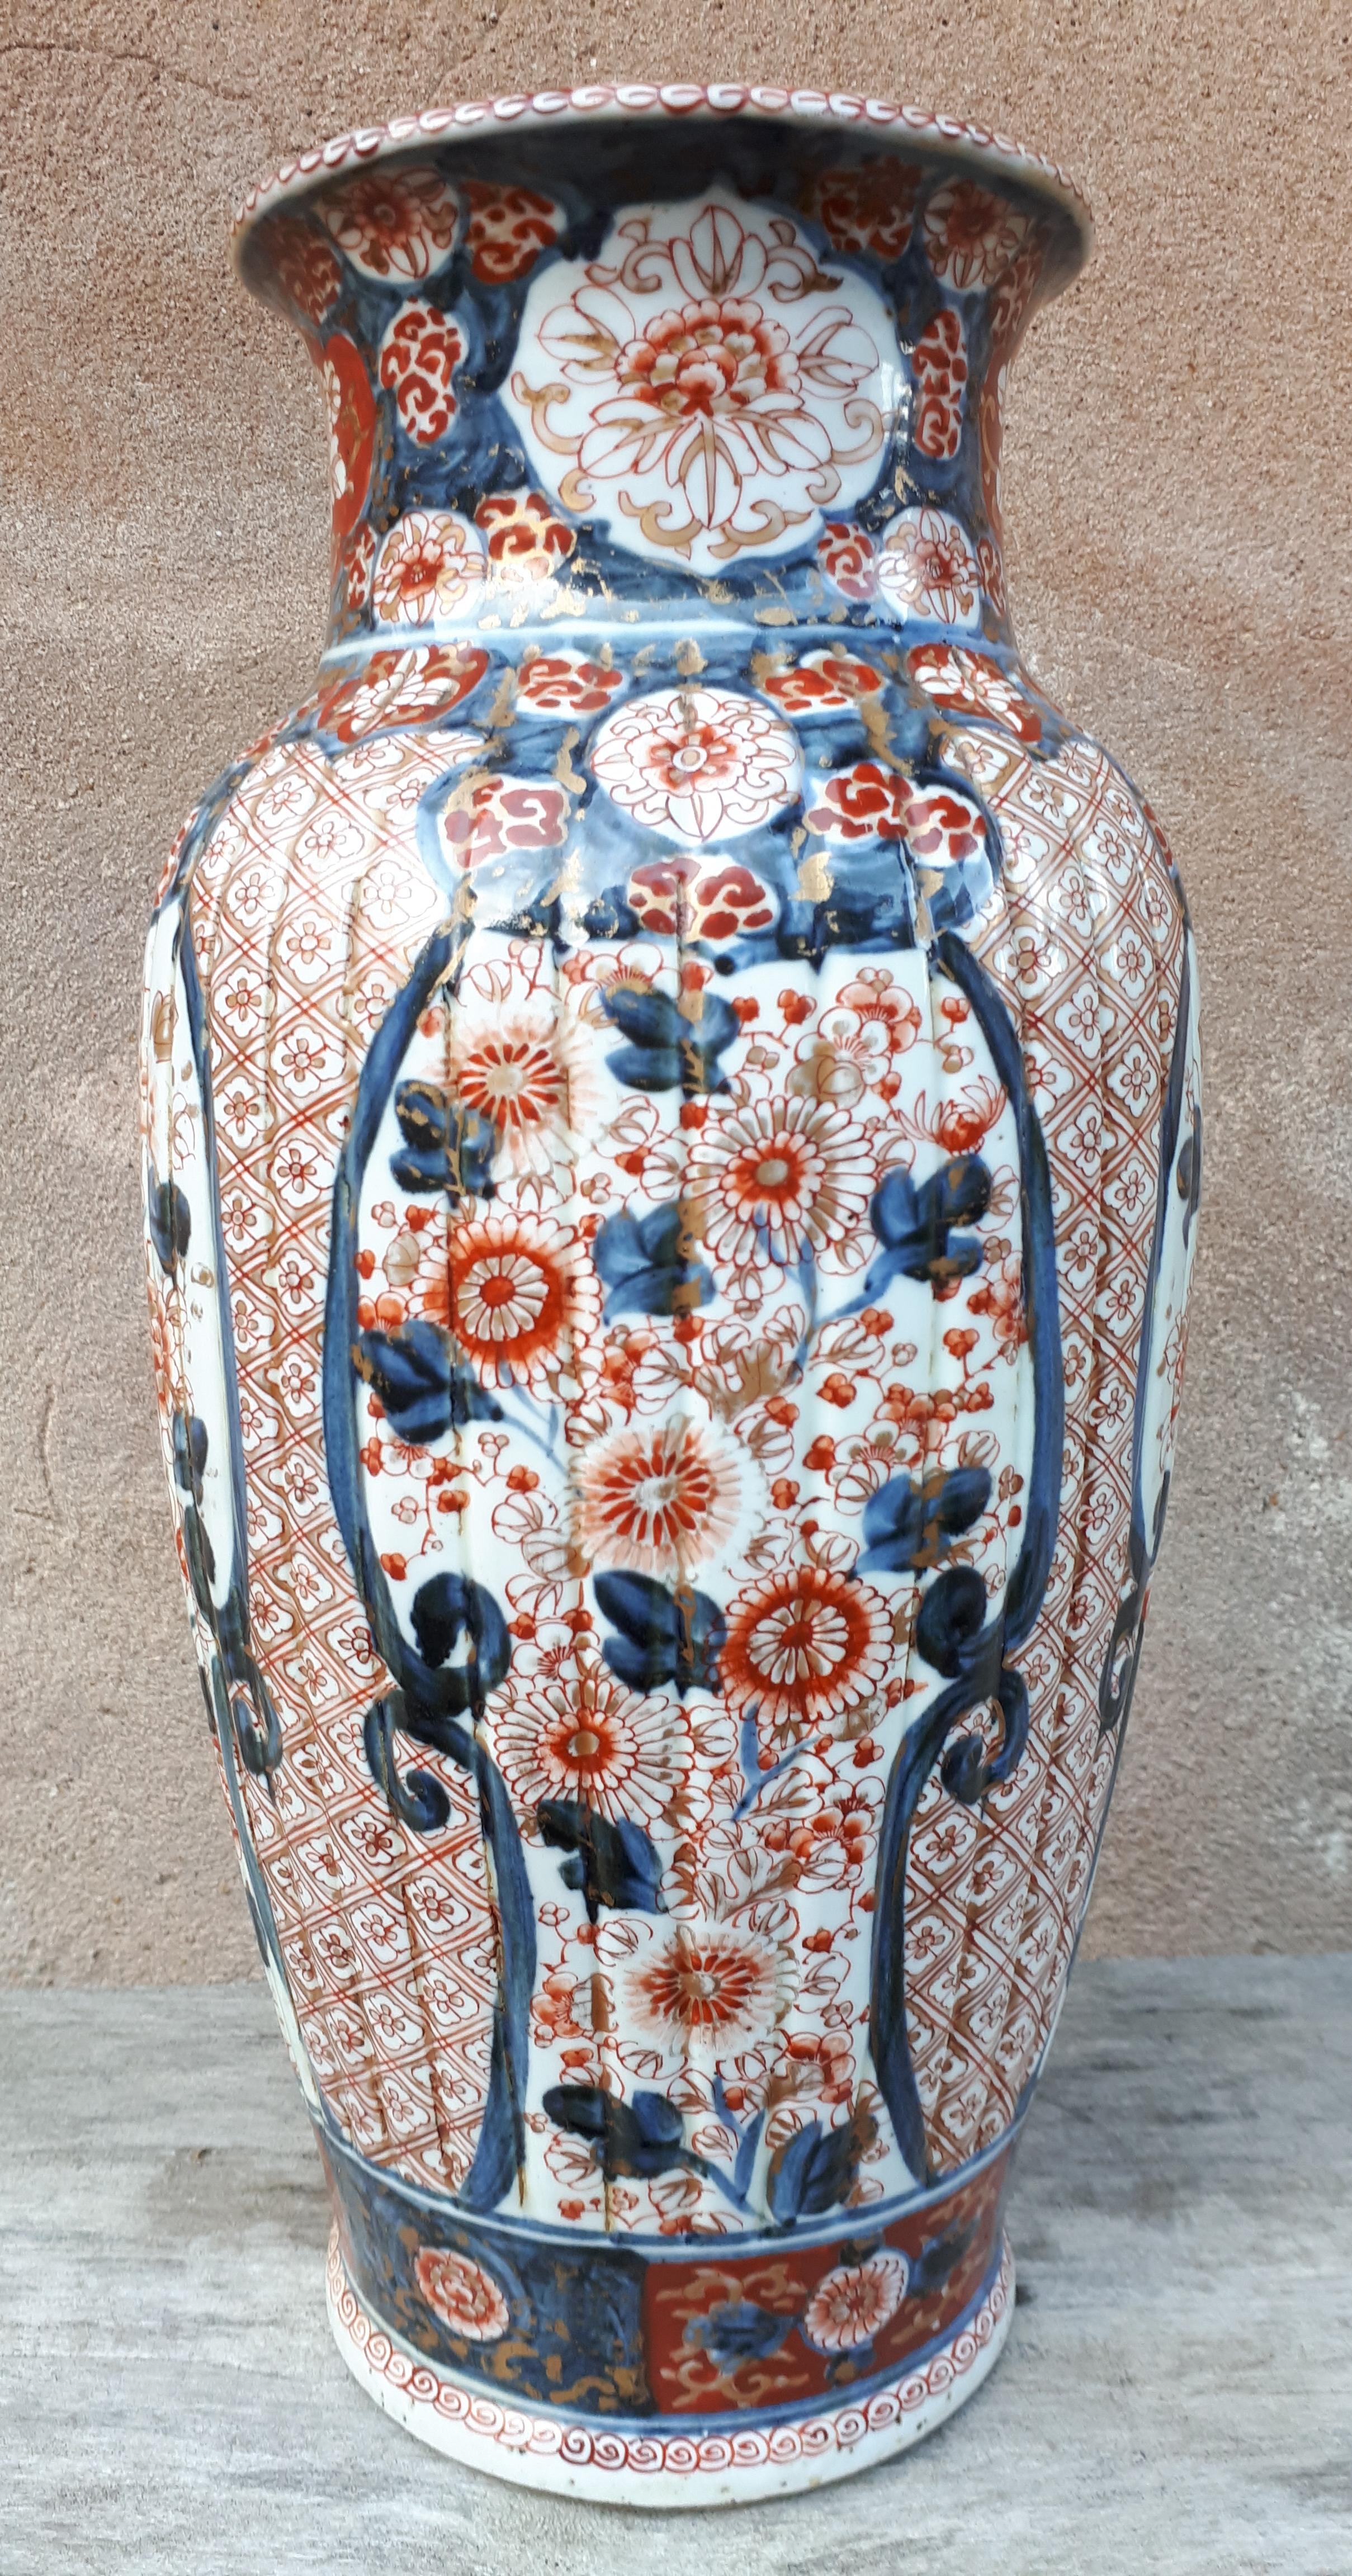 Bedeutende Vase aus Arita-Porzellan mit blauem, korallenrotem und goldenem Dekor aus Blumen in Reserven auf einem Hintergrund aus Gittern und Blattwerk.
Japan, 18. Jahrhundert.